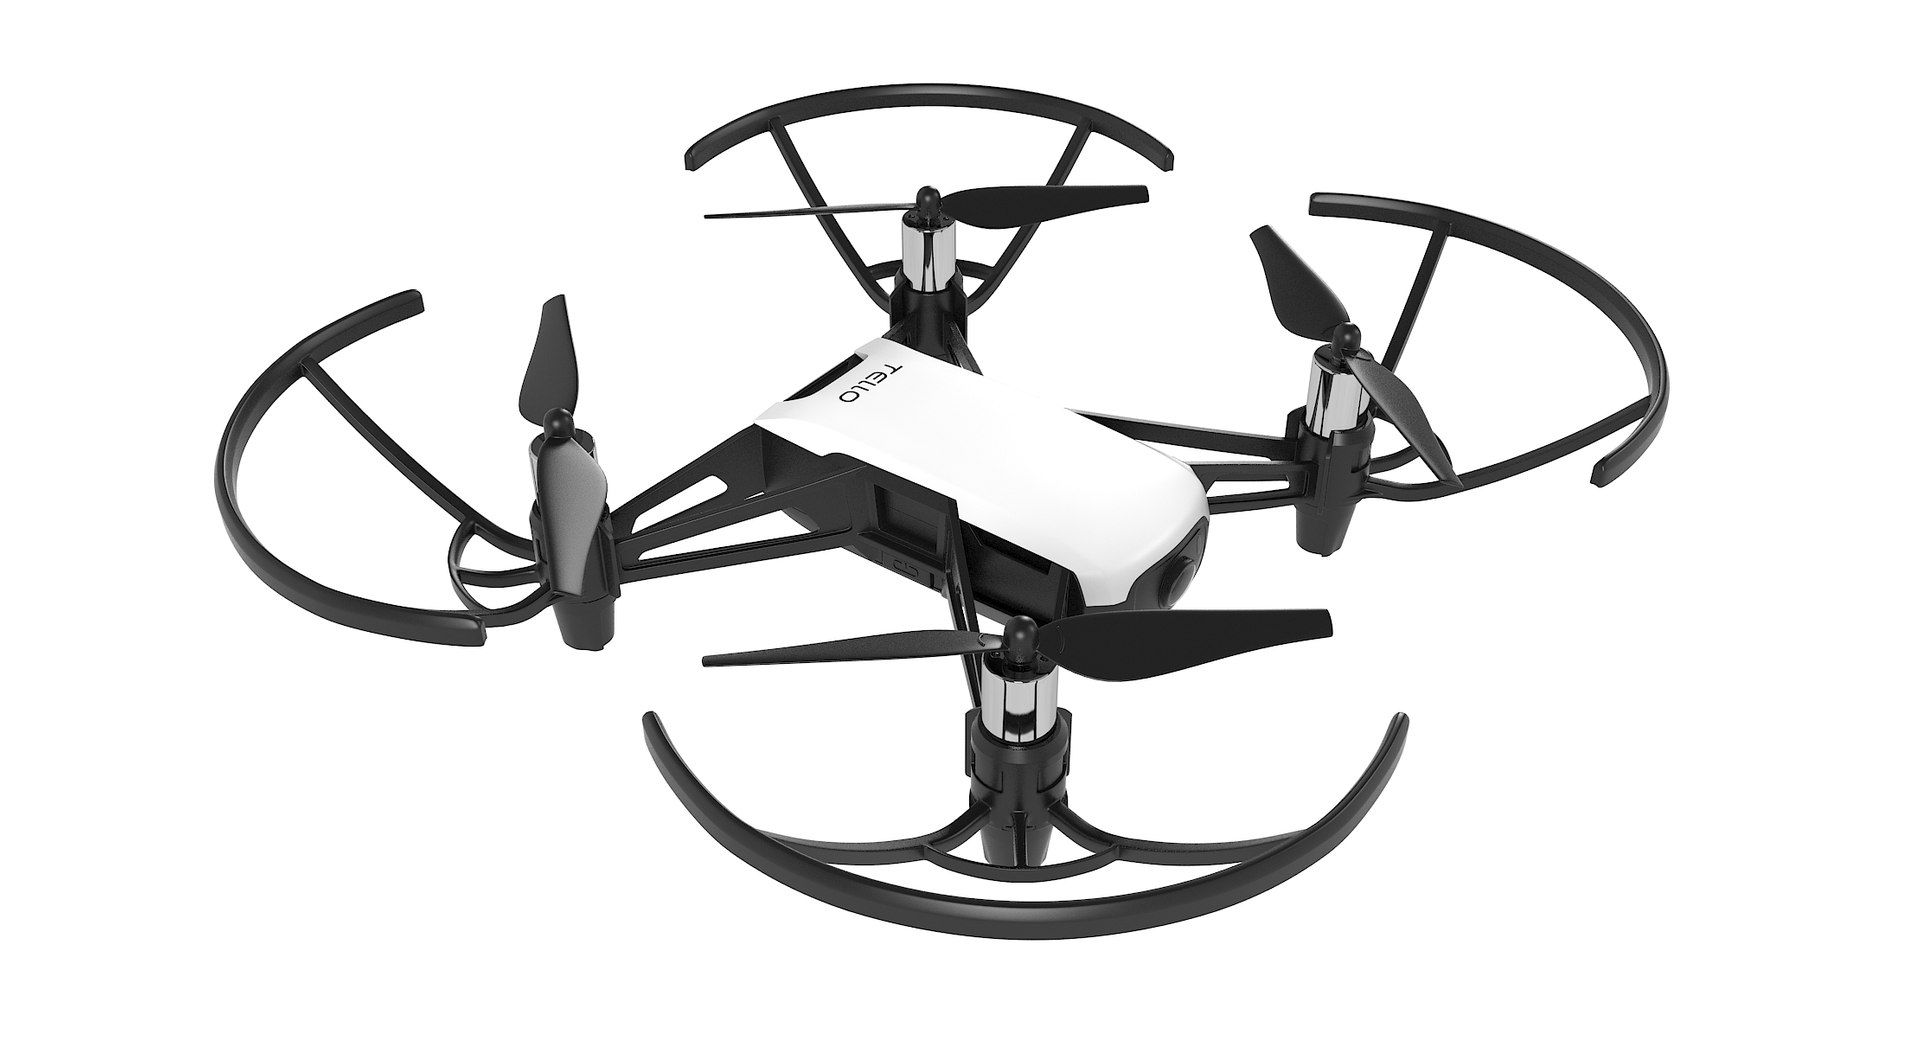 Dji tello drone 3D model - TurboSquid 1301752